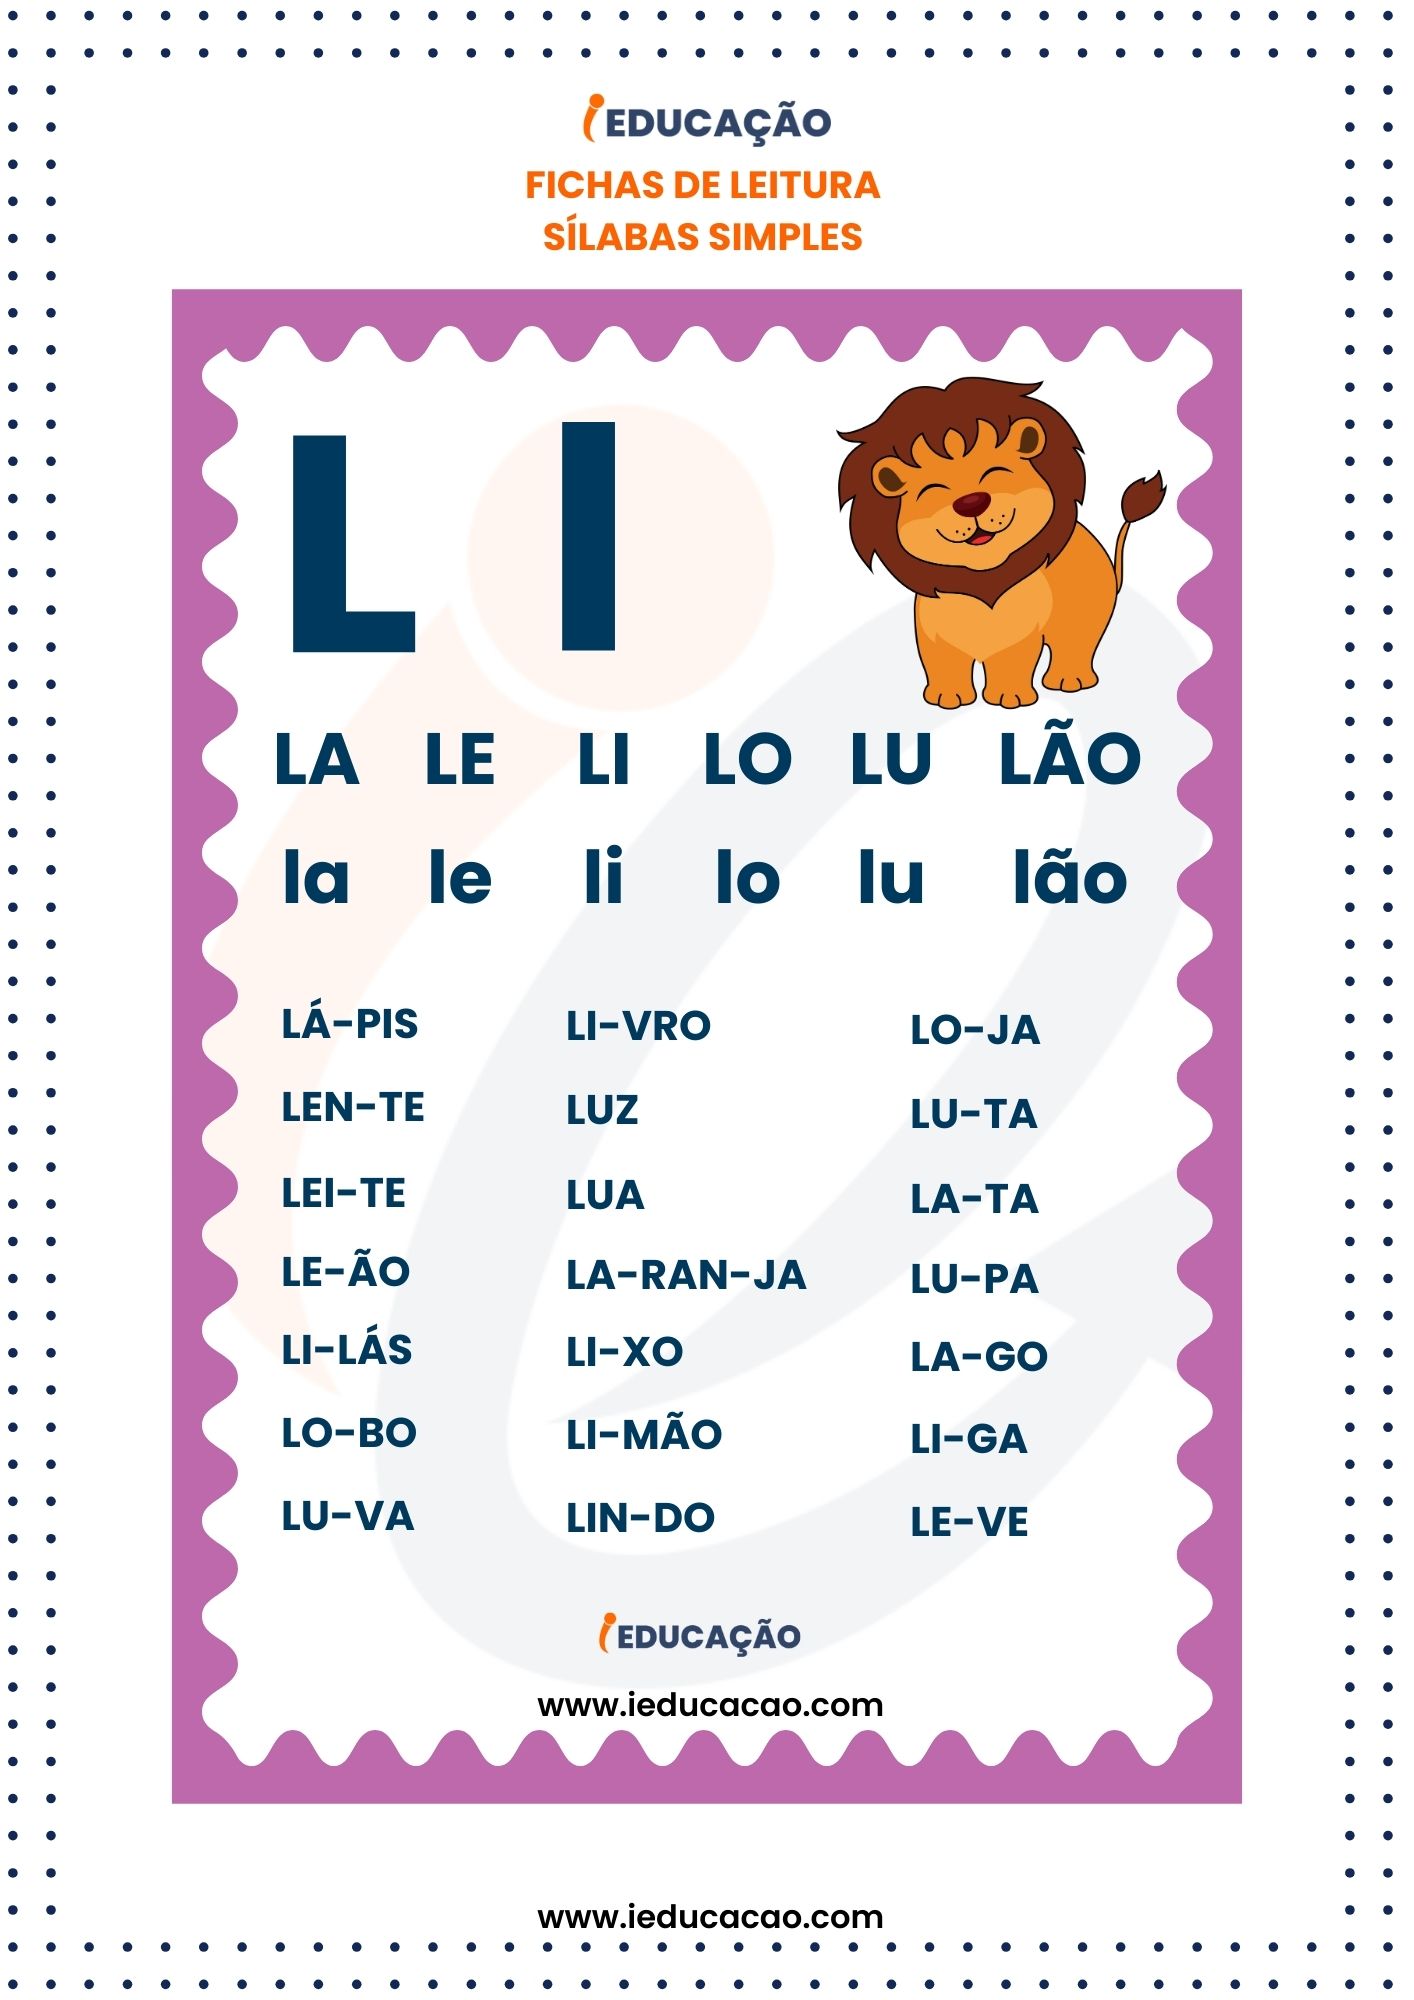 Fichas de Leitura Silabas Simples - silabas La le li lo lu